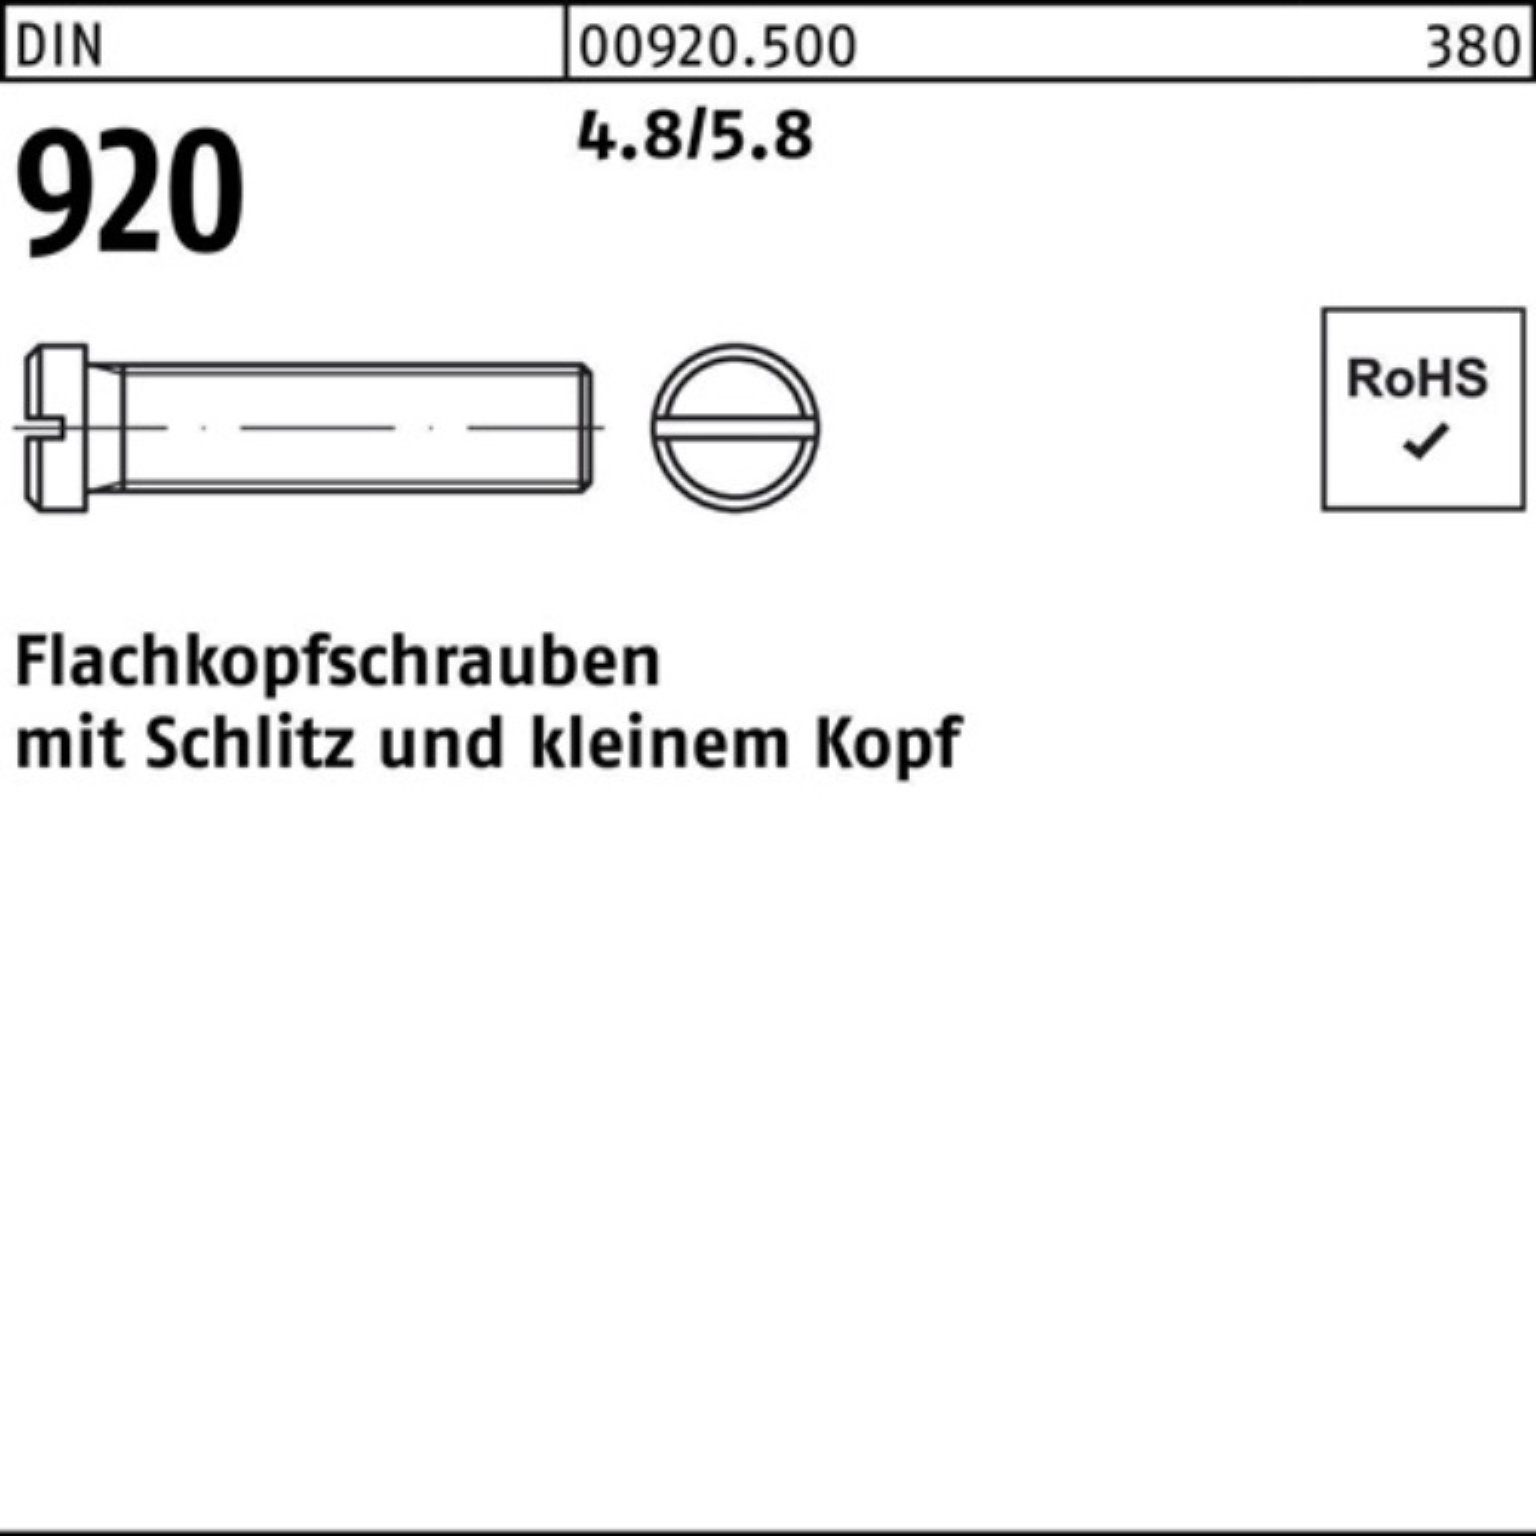 Pack 100er 4.8/5.8 DIN Flachkopfschraube Schlitz 100 Stück Reyher M3x 5 Schraube 920